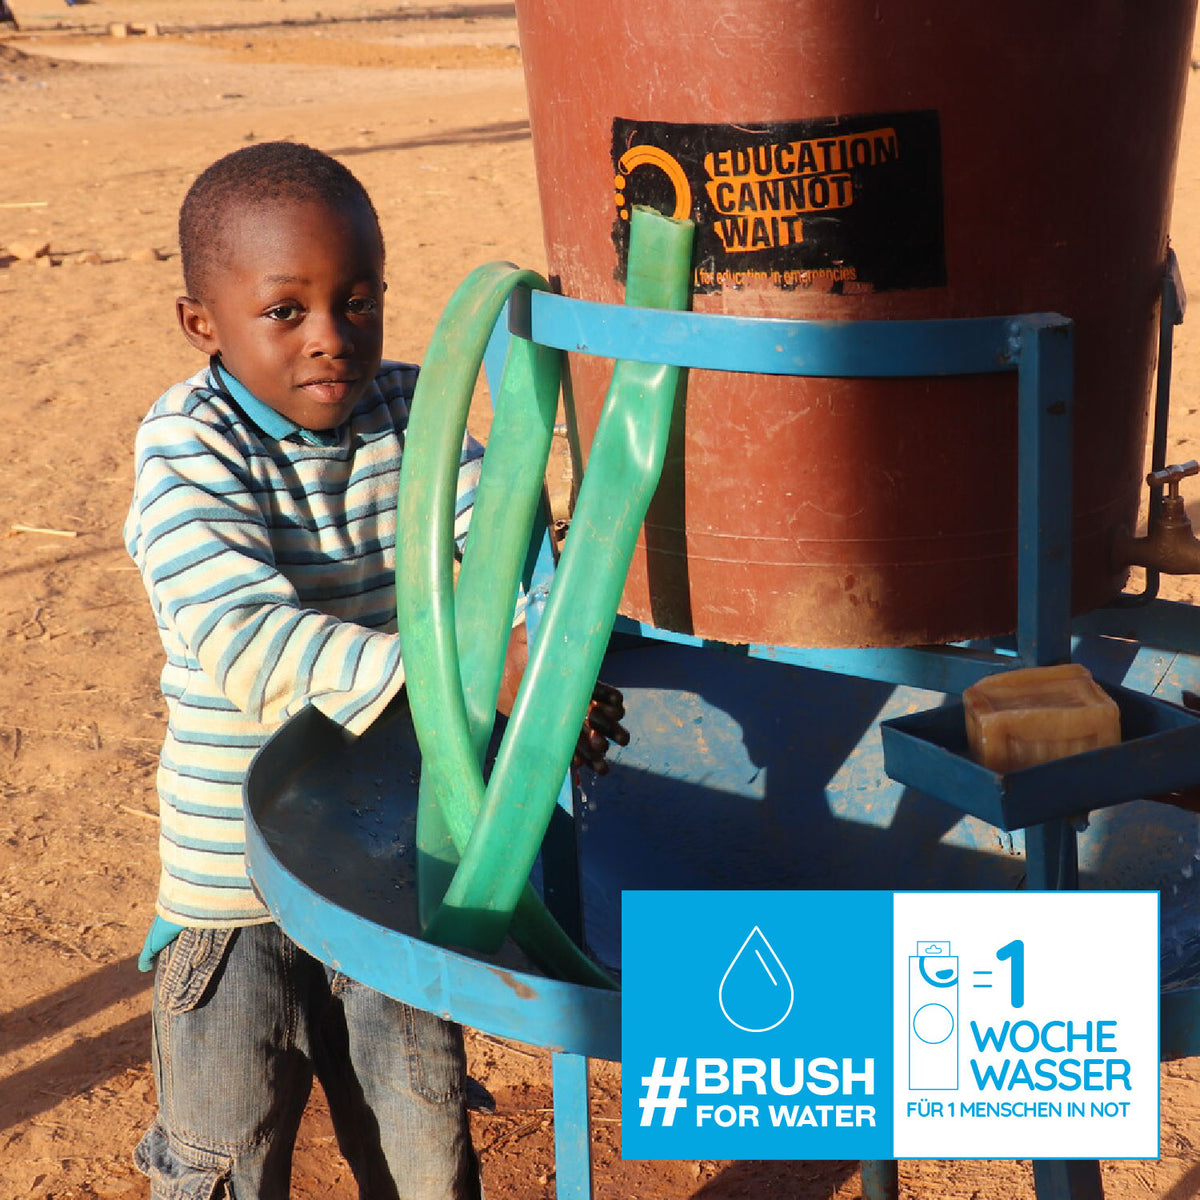 spendet 1 Woche Wasser für 1 Menschen in Not #brushforwater